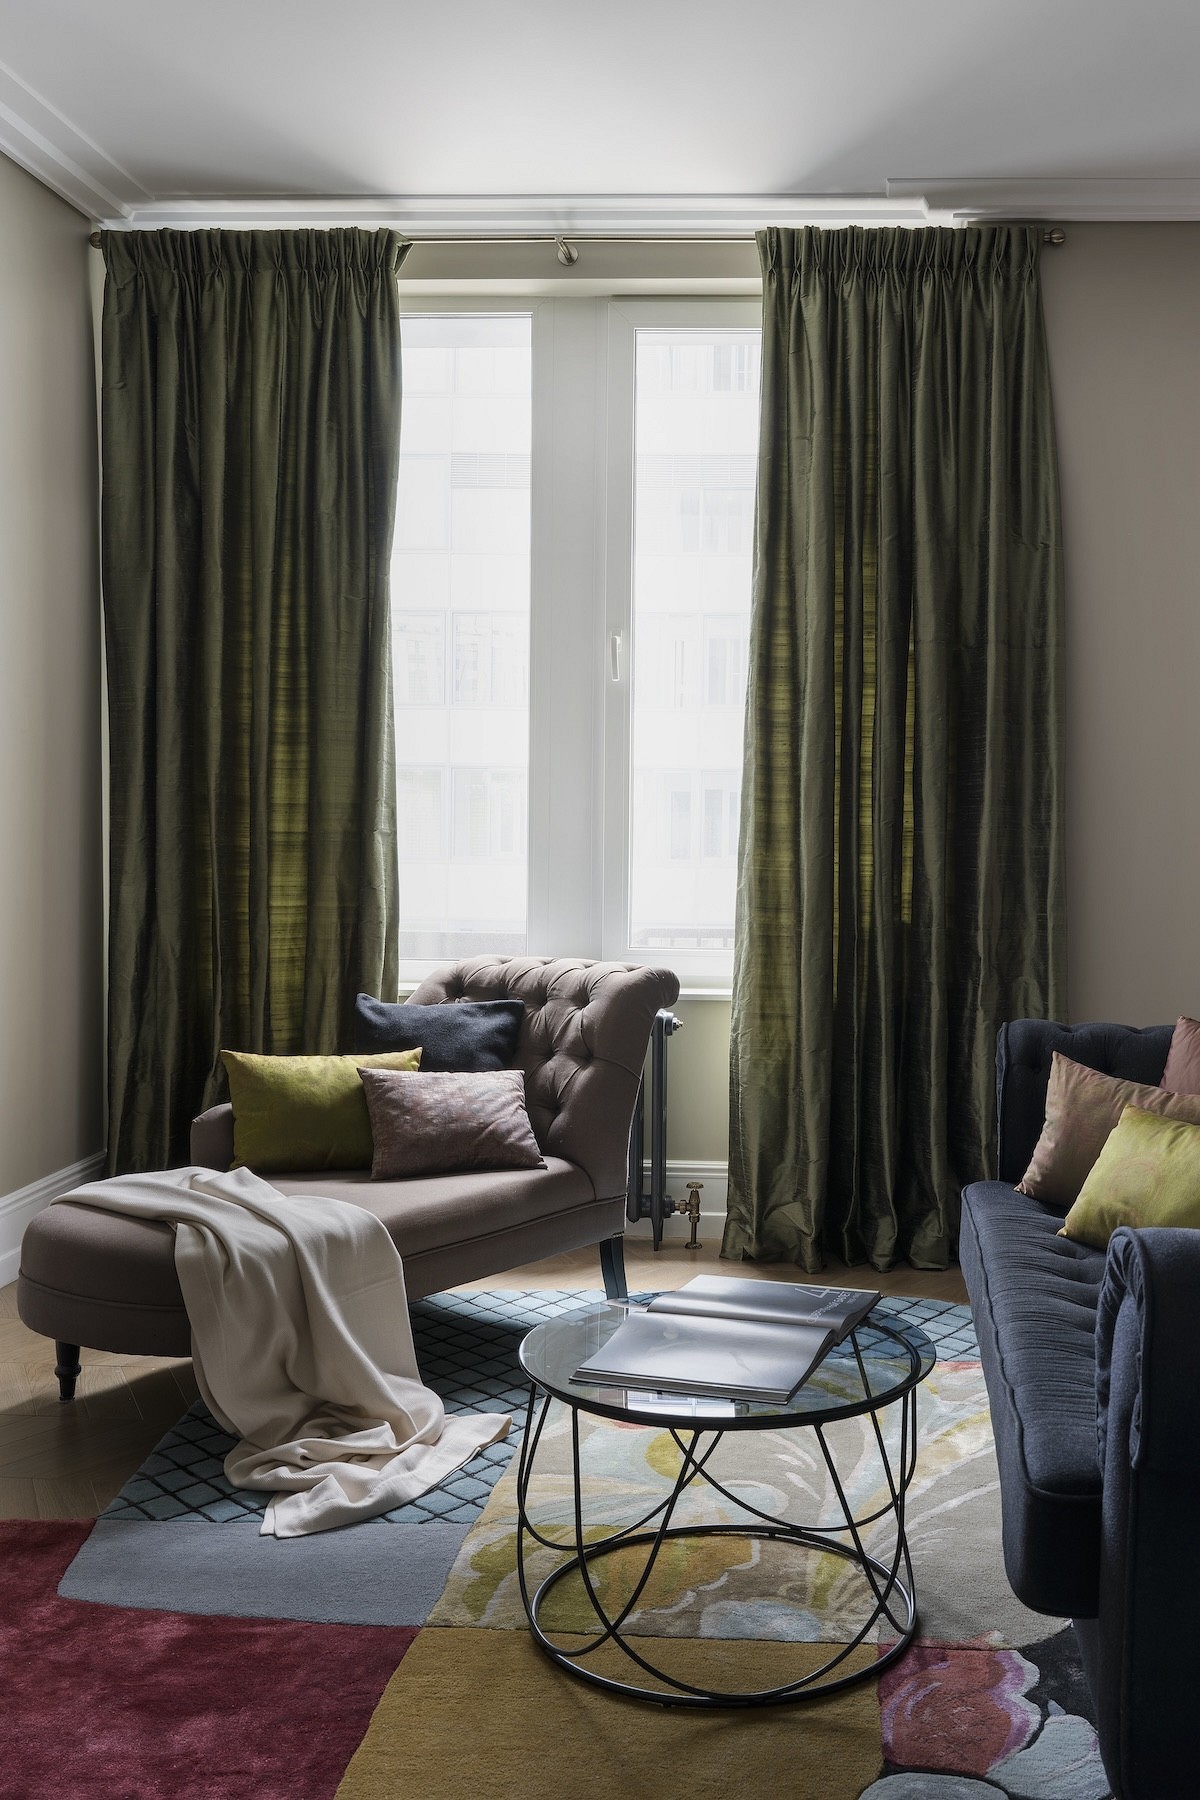 Квартира-будуар: сложные цвета, максимум функциональности и безупречный классический стиль21